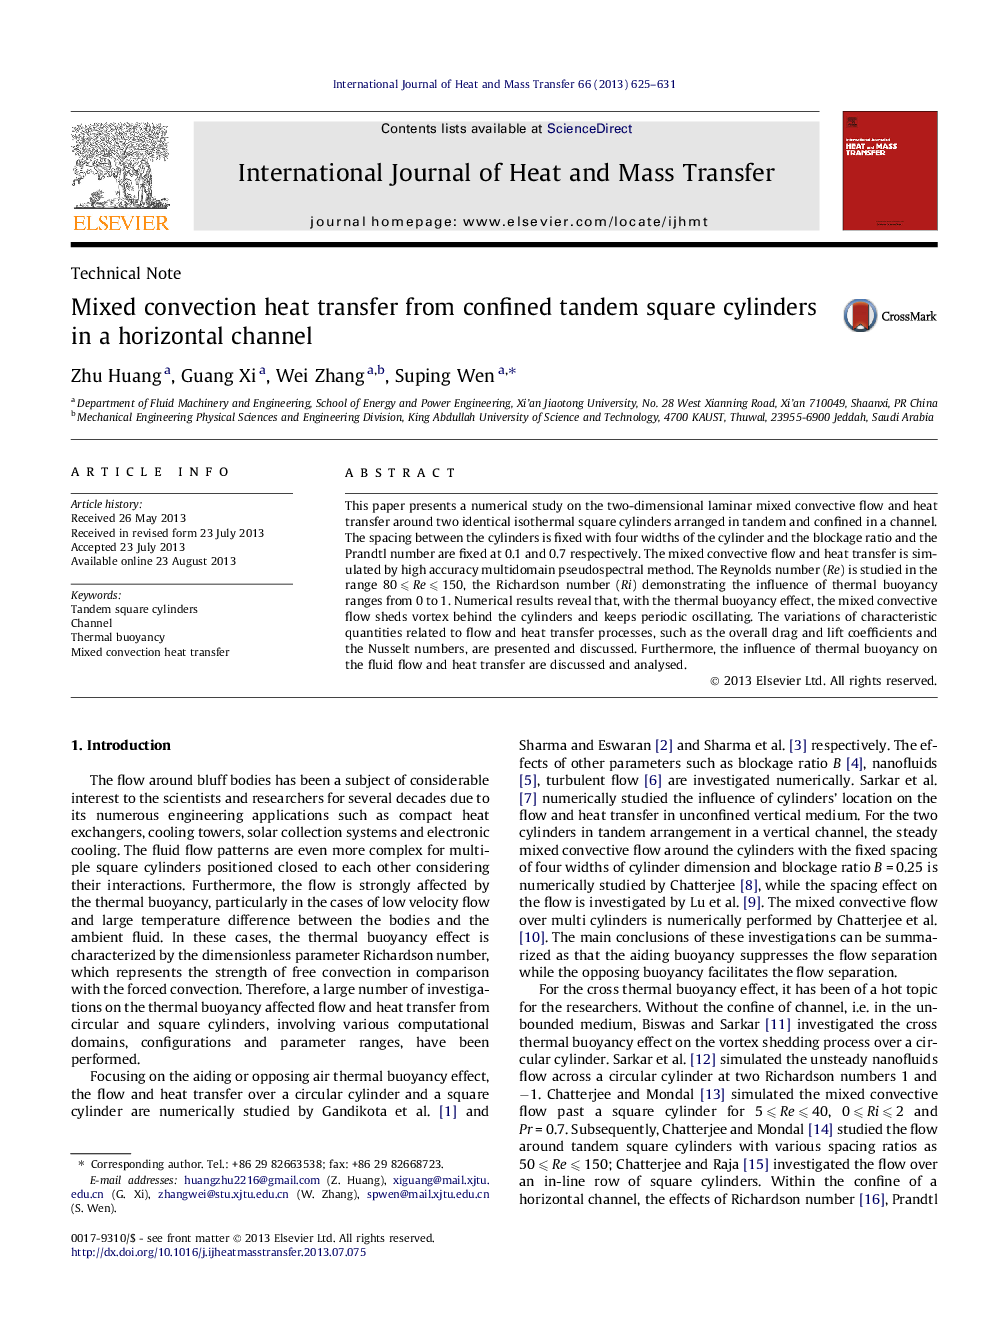 انتقال حرارتی مخلوطی از سیلندر مربع دو طرفه محدود در یک کانال افقی 